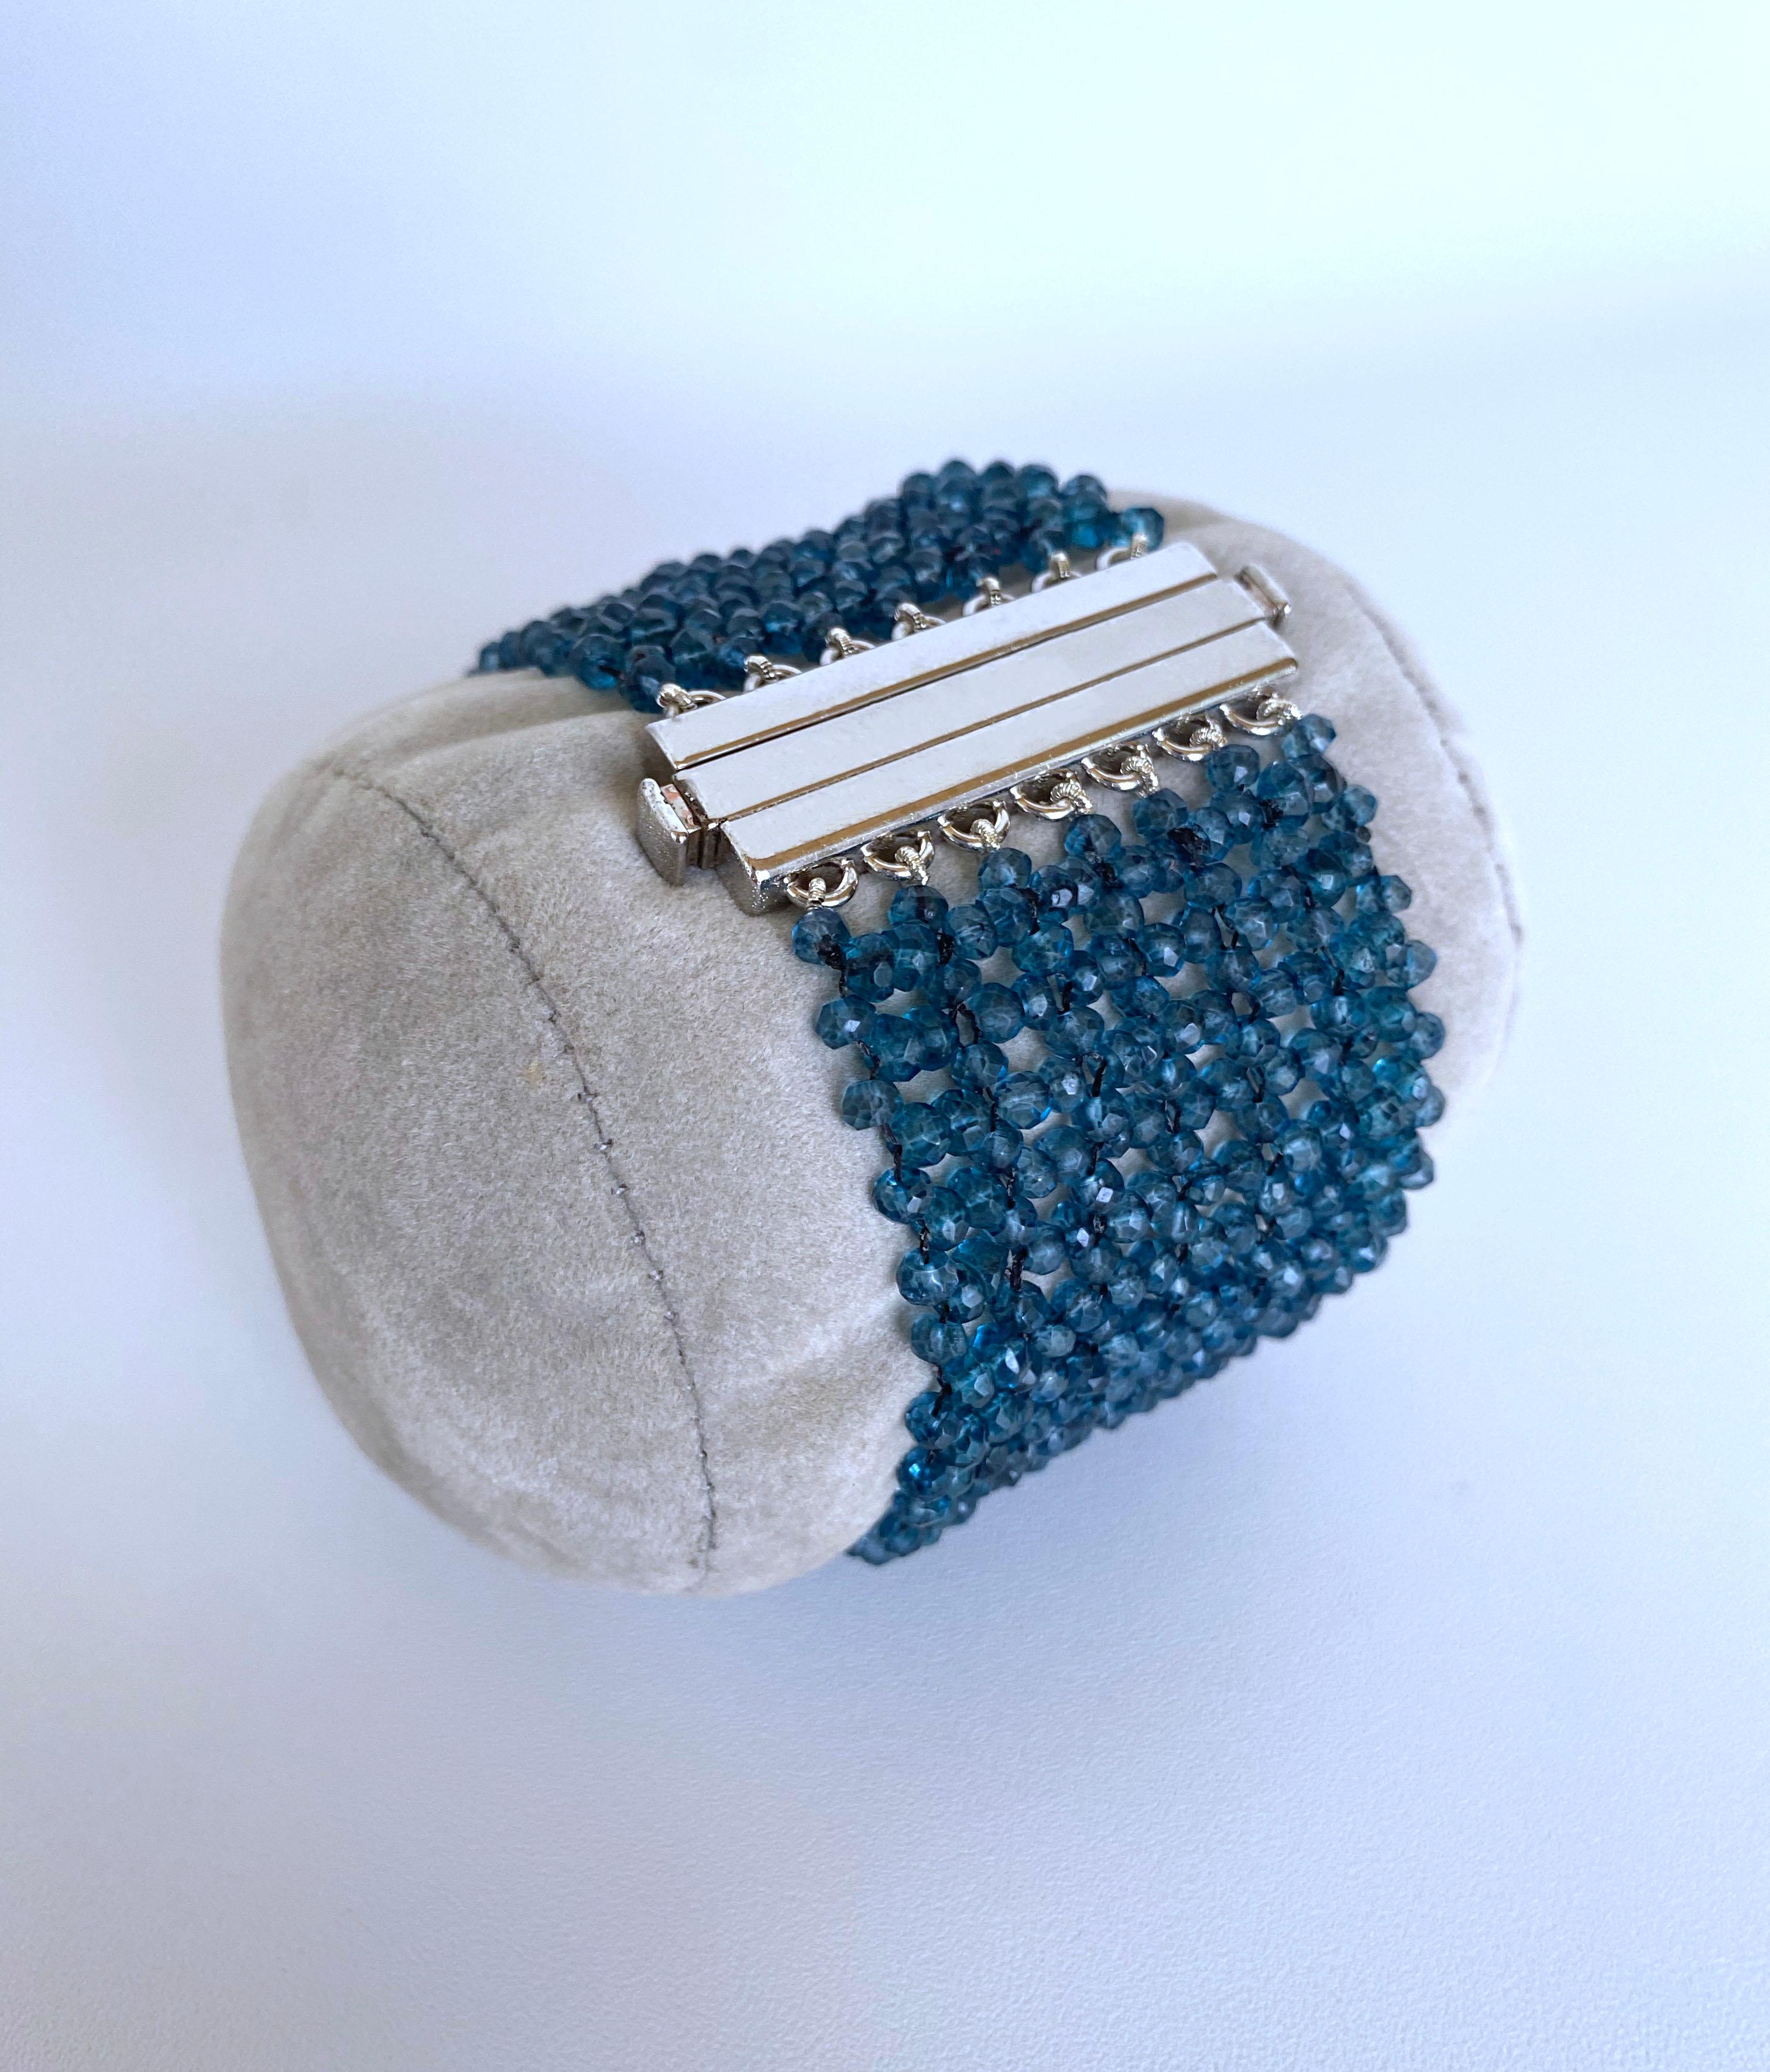 Les perles de topaze bleu profond sont tissées ensemble pour former un bracelet de 1,25 pouce de large. Le chatoiement des perles de topaze est mis en valeur par le fermoir à pression en argent. Ce fermoir en argent rhodié est également très sûr et